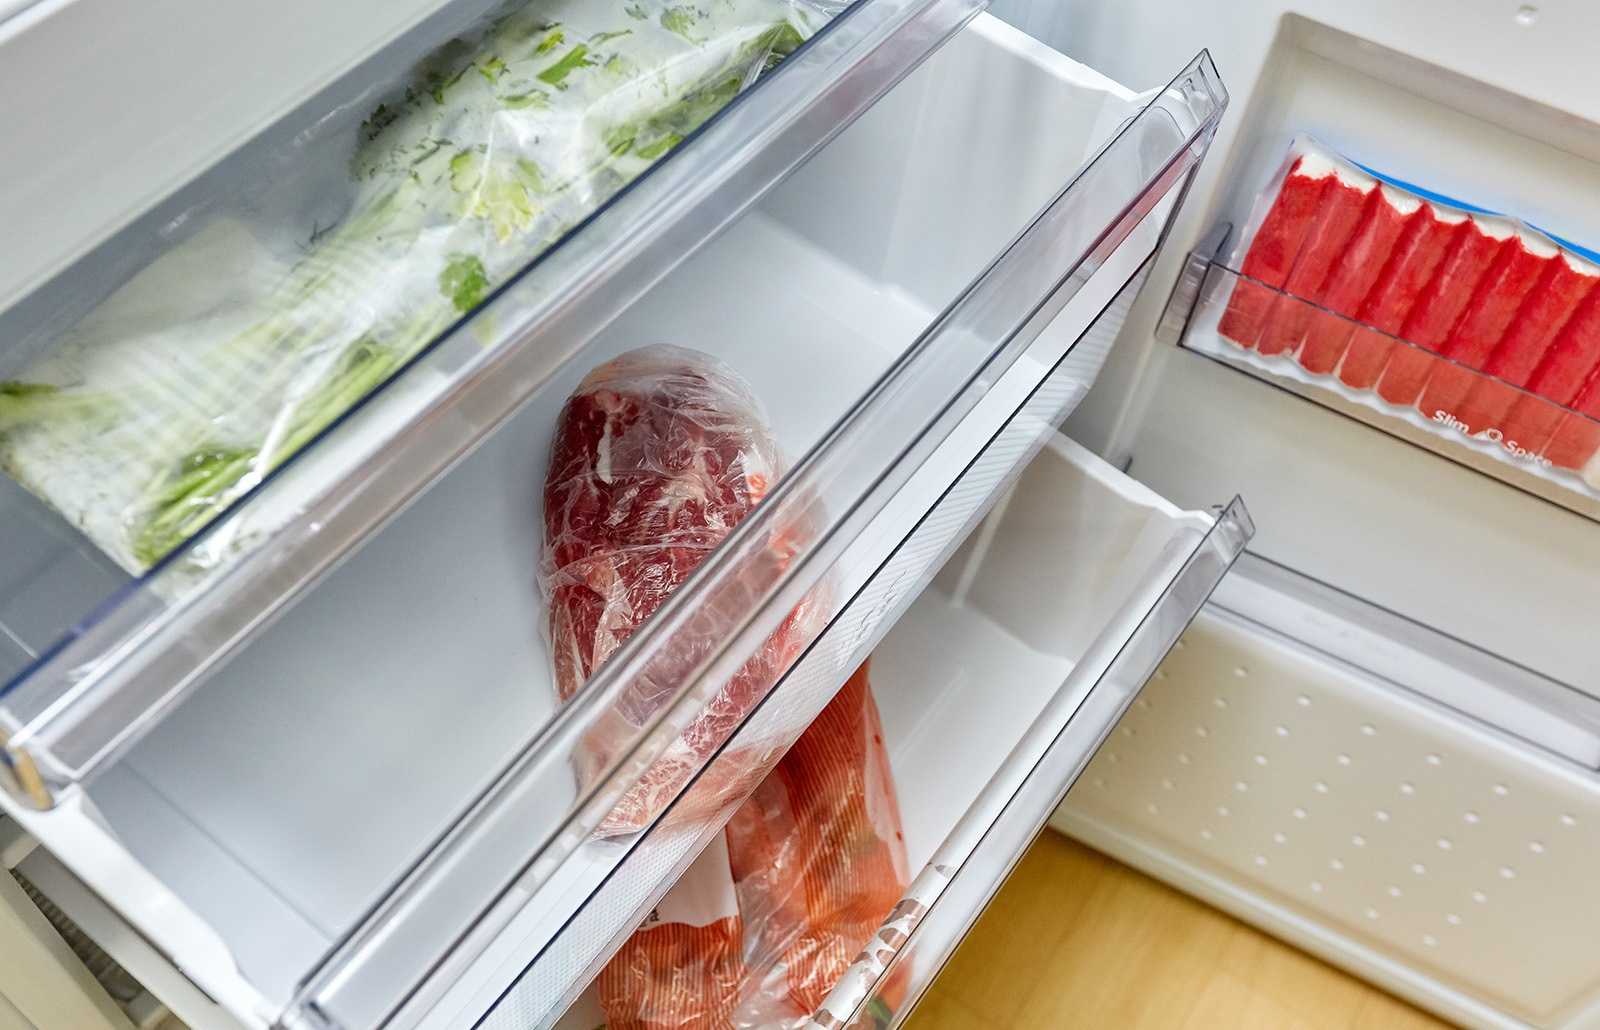 Классы энергопотребления холодильника: таблица, какой лучше